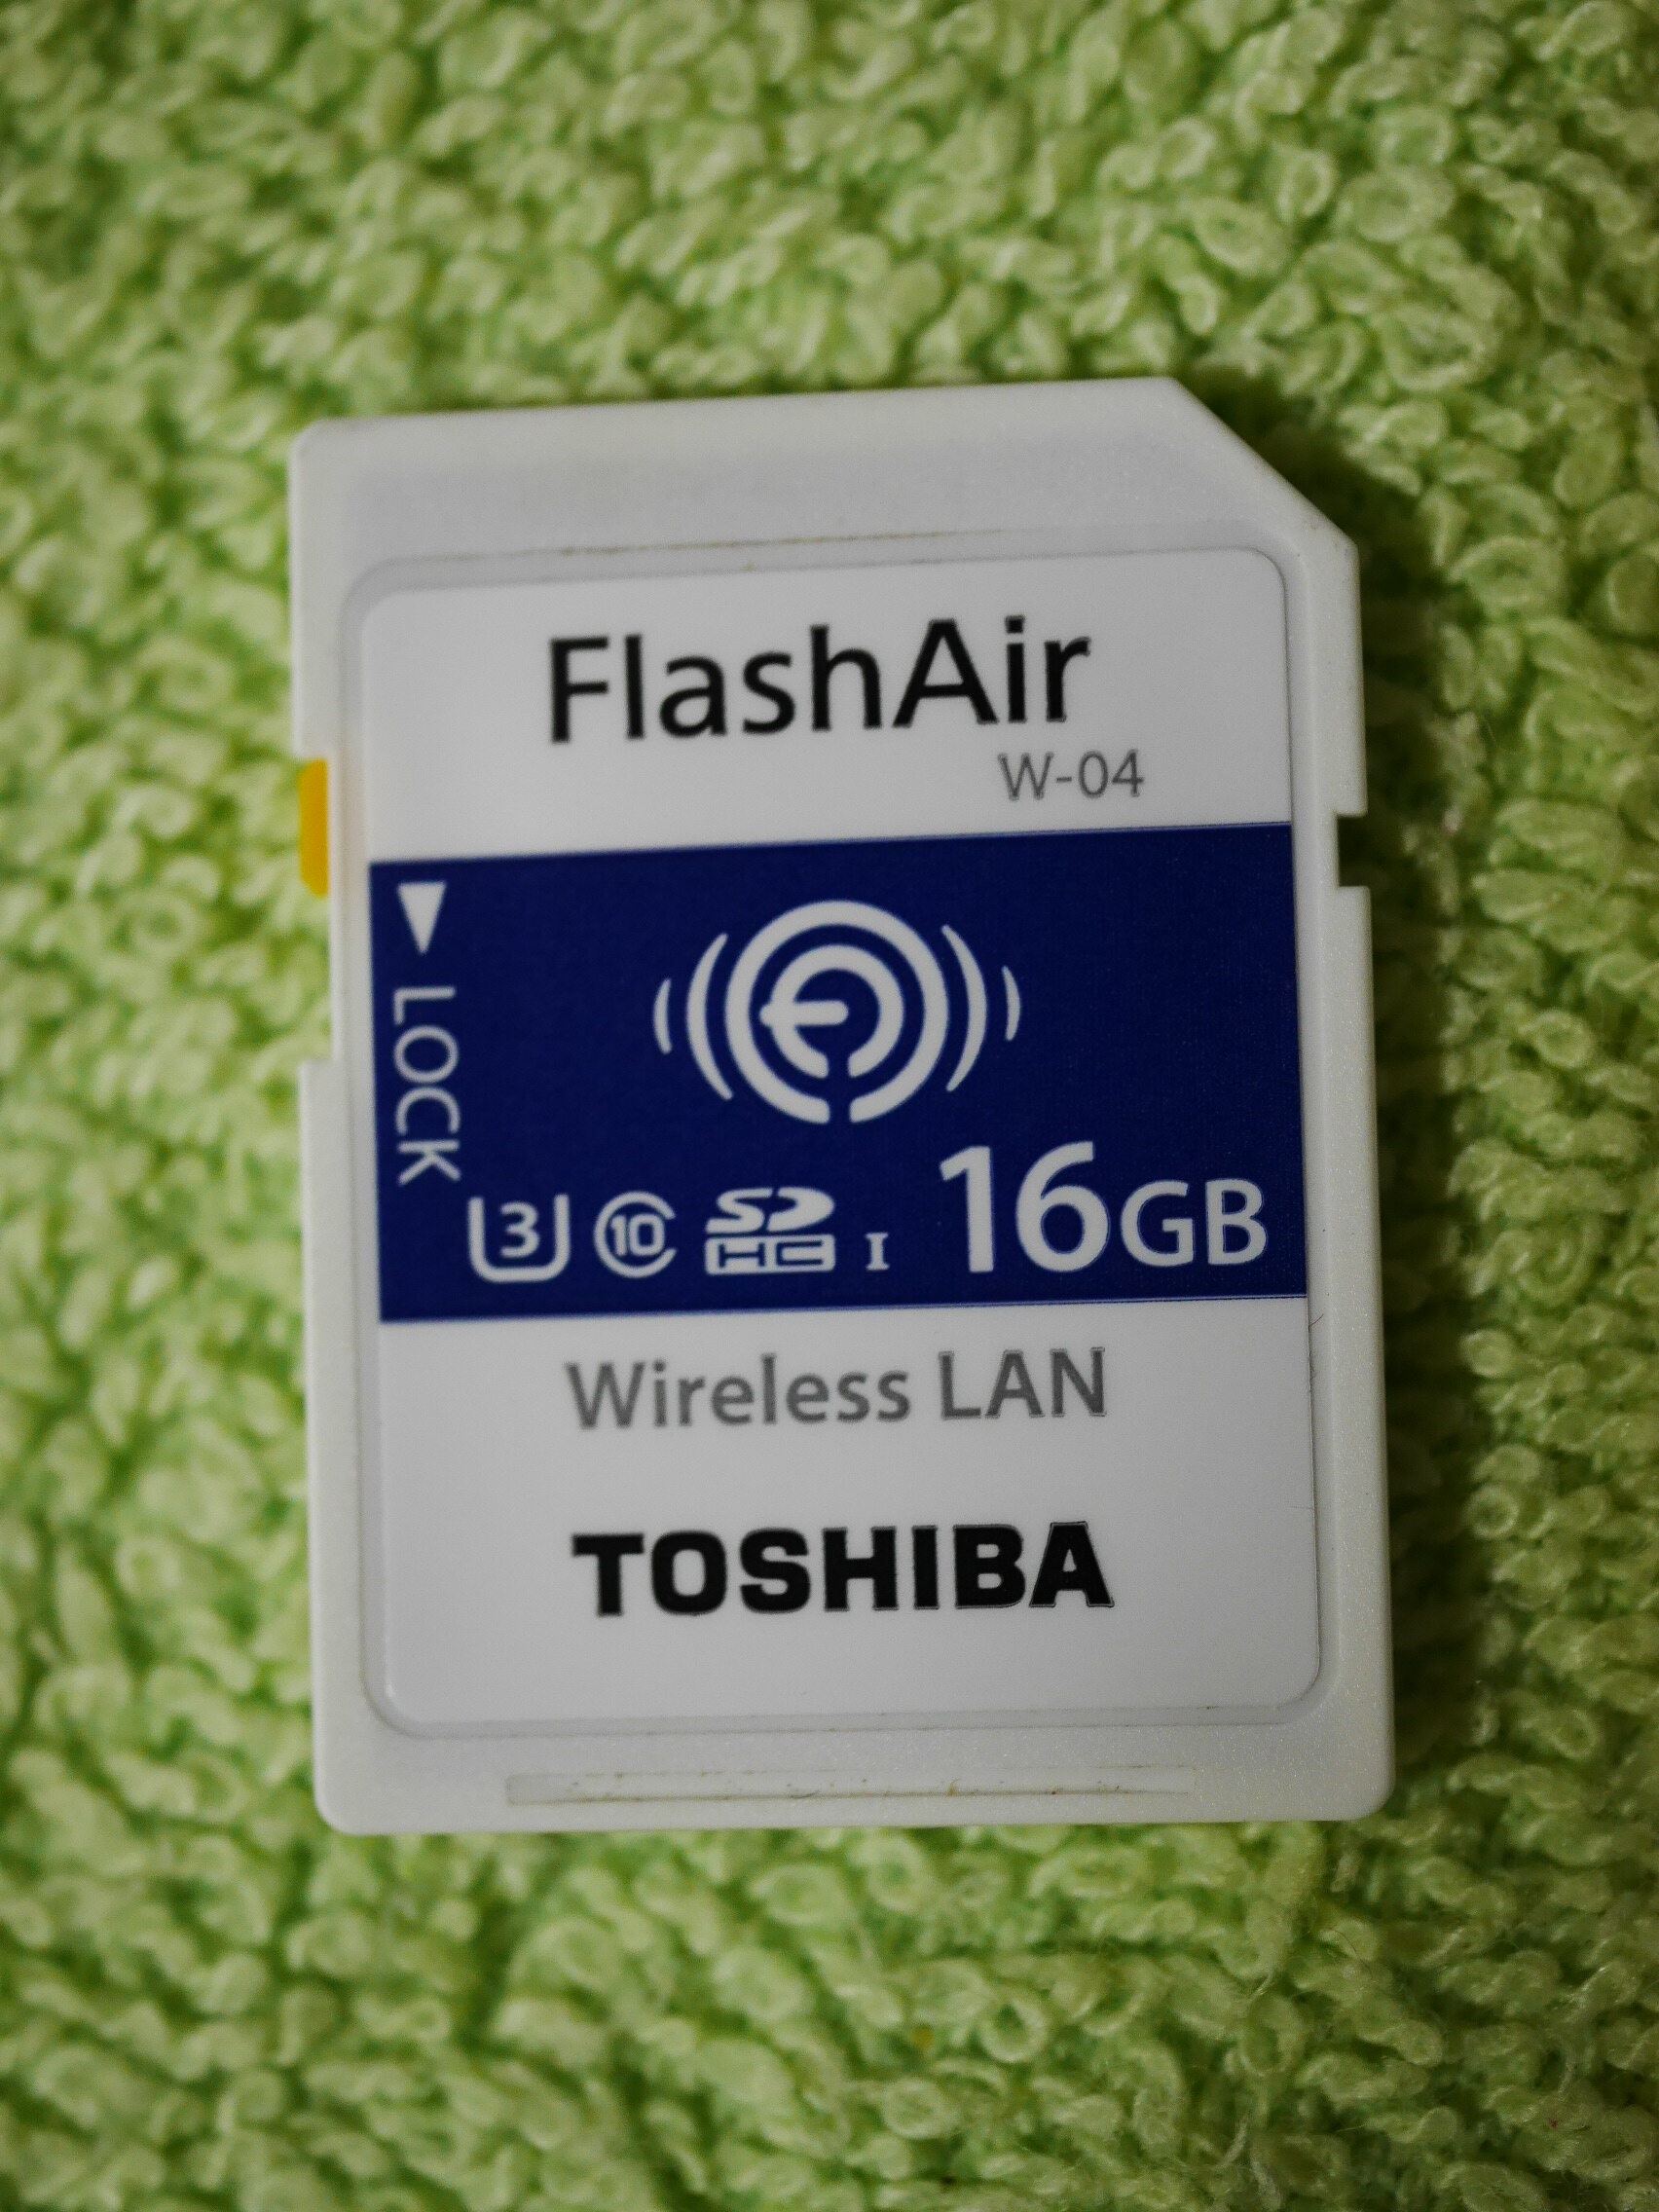 マーケット TOSHIBA FlashAir 16GB W-04 agapeeurope.org